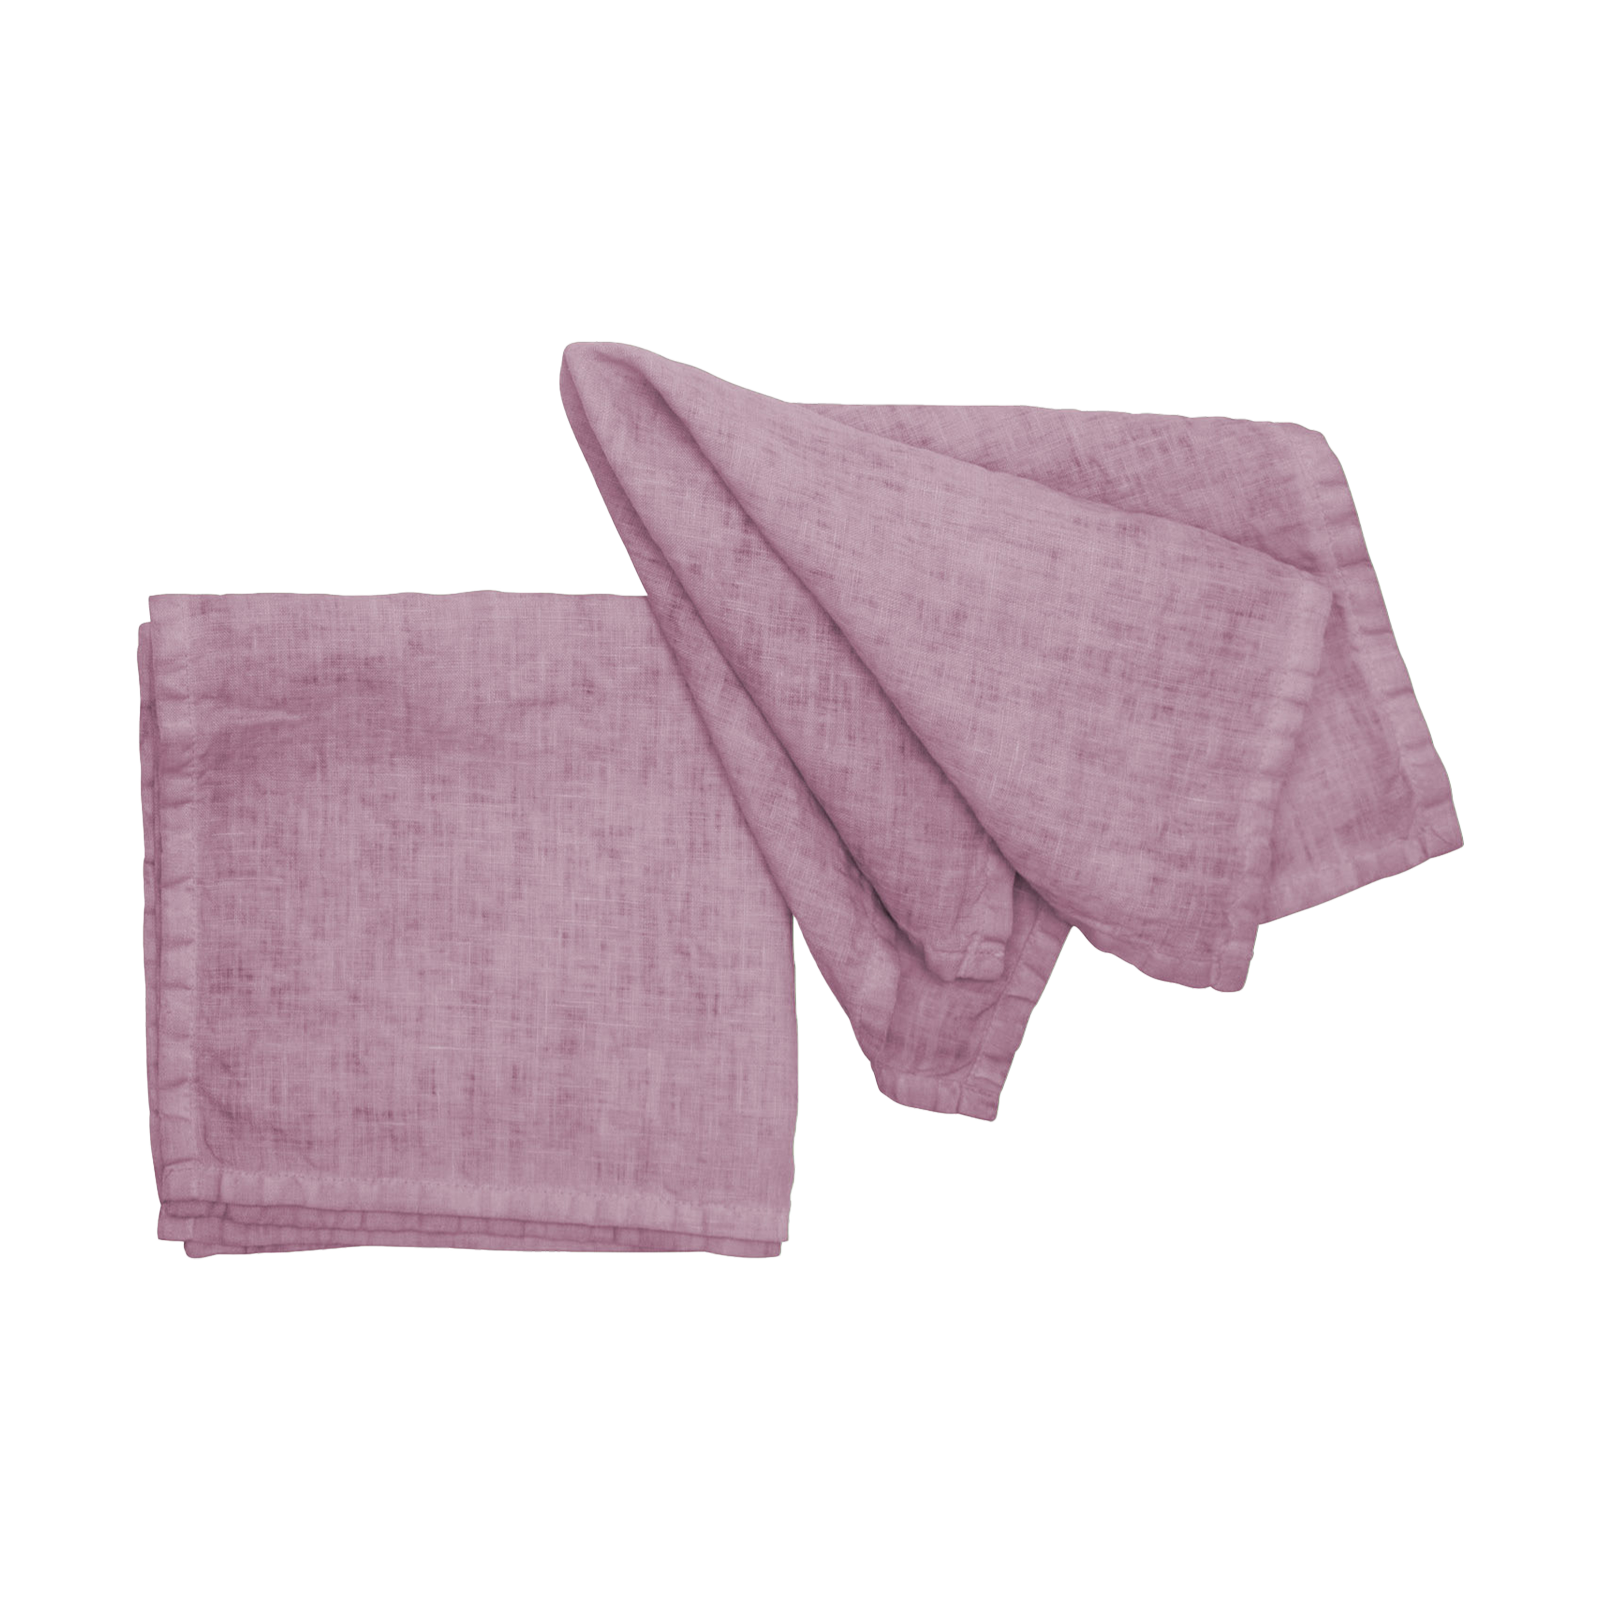 Größe: 40x 40 cm Farbe: lavendel #farbe_lavendel